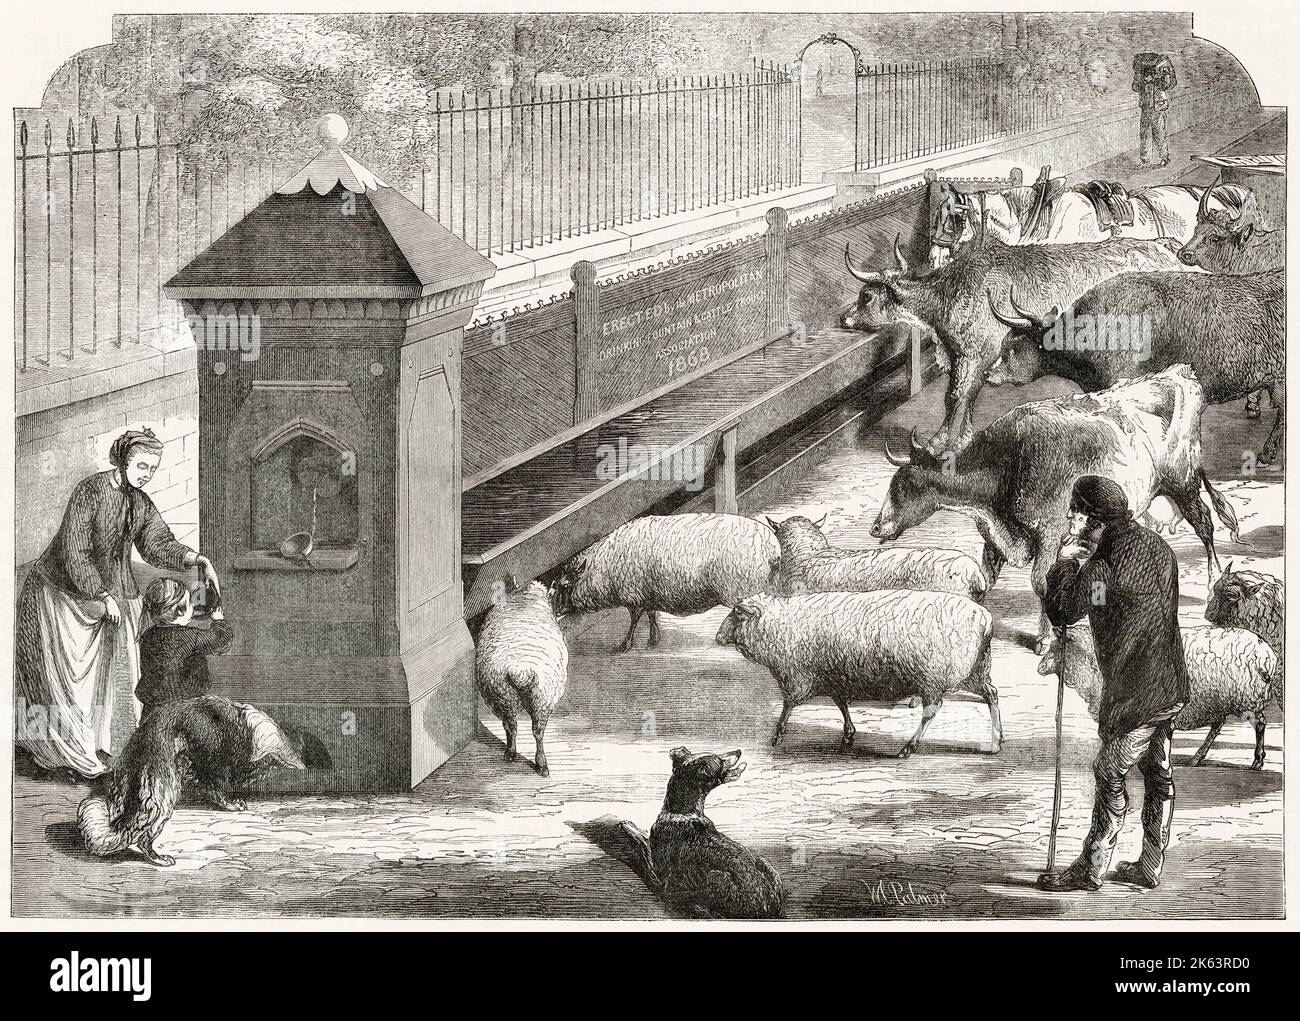 Ein großer Trinkbrunnen im Stadtteil, der 1868 von der „Trinkbrunnen- und Rindertrough Association“ errichtet wurde und Pferden, Ochsen, Schafen, Hunden und Menschen Wasser liefert. Stockfoto